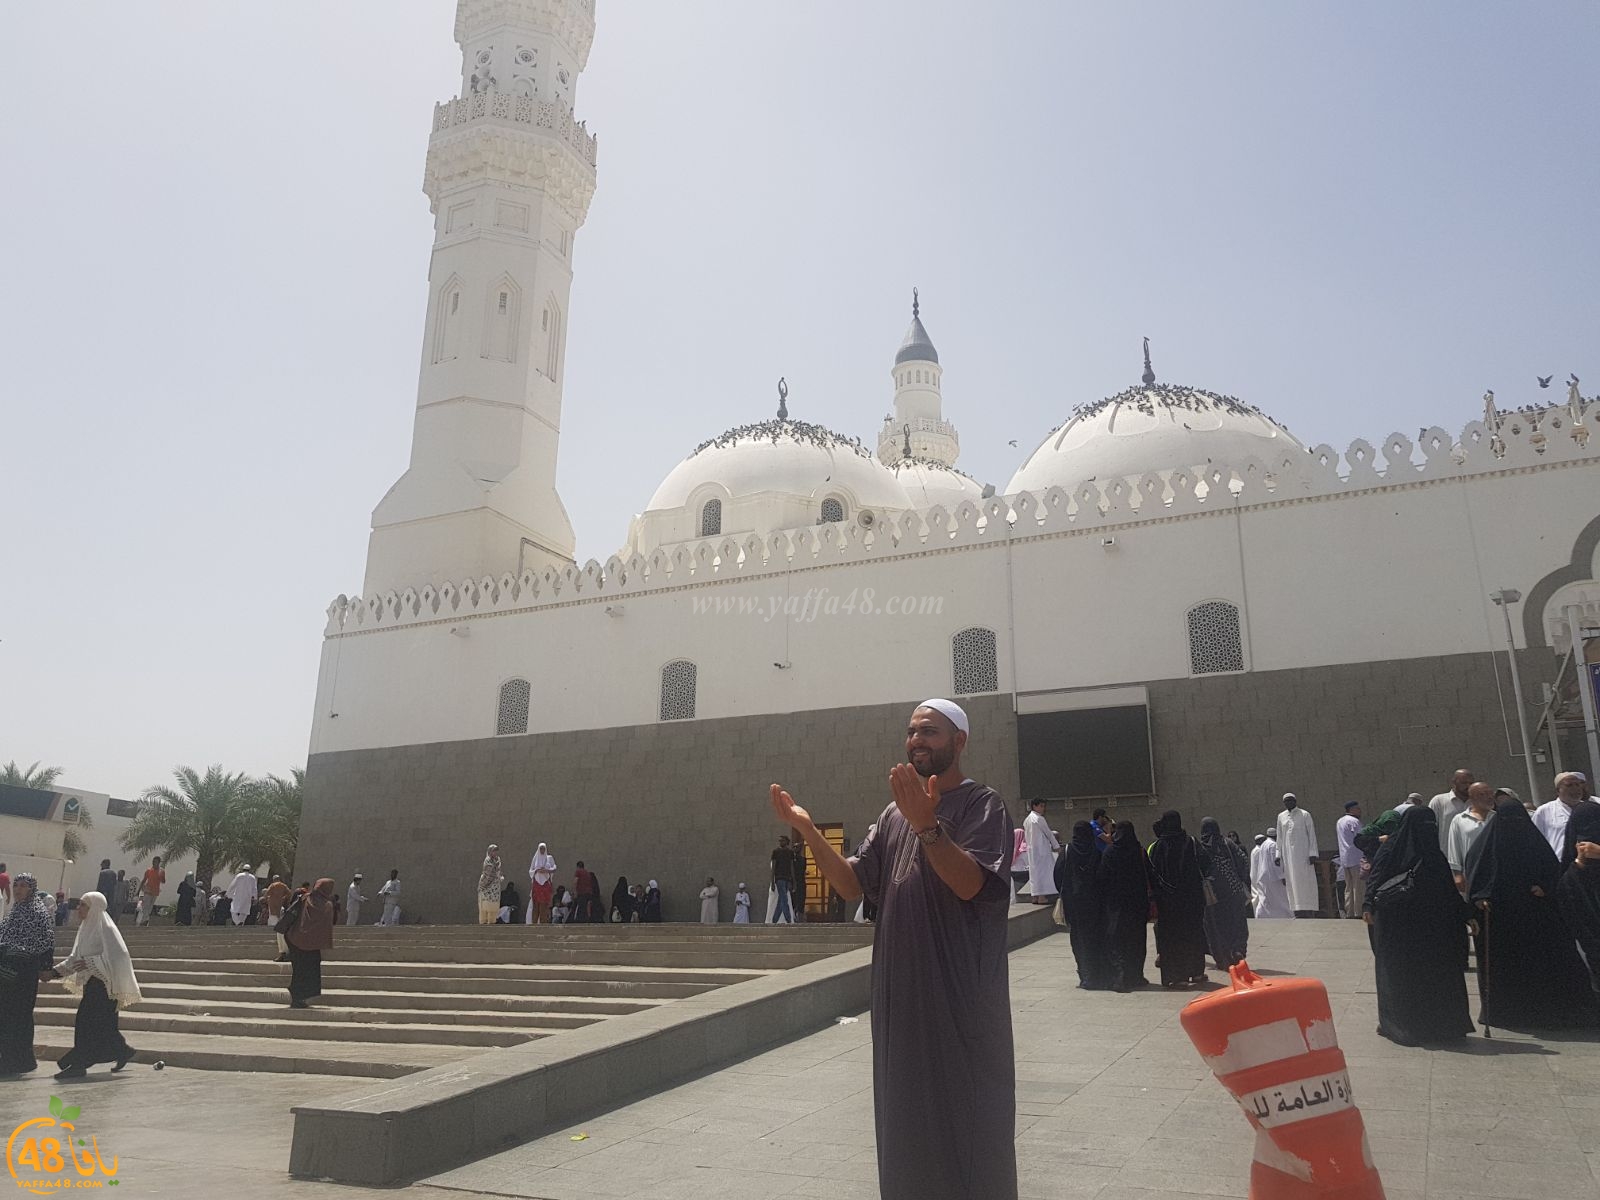  بالصور: معتمرو مدينة يافا يزورون الأماكن الاسلامية التاريخية في المدينة المنورة